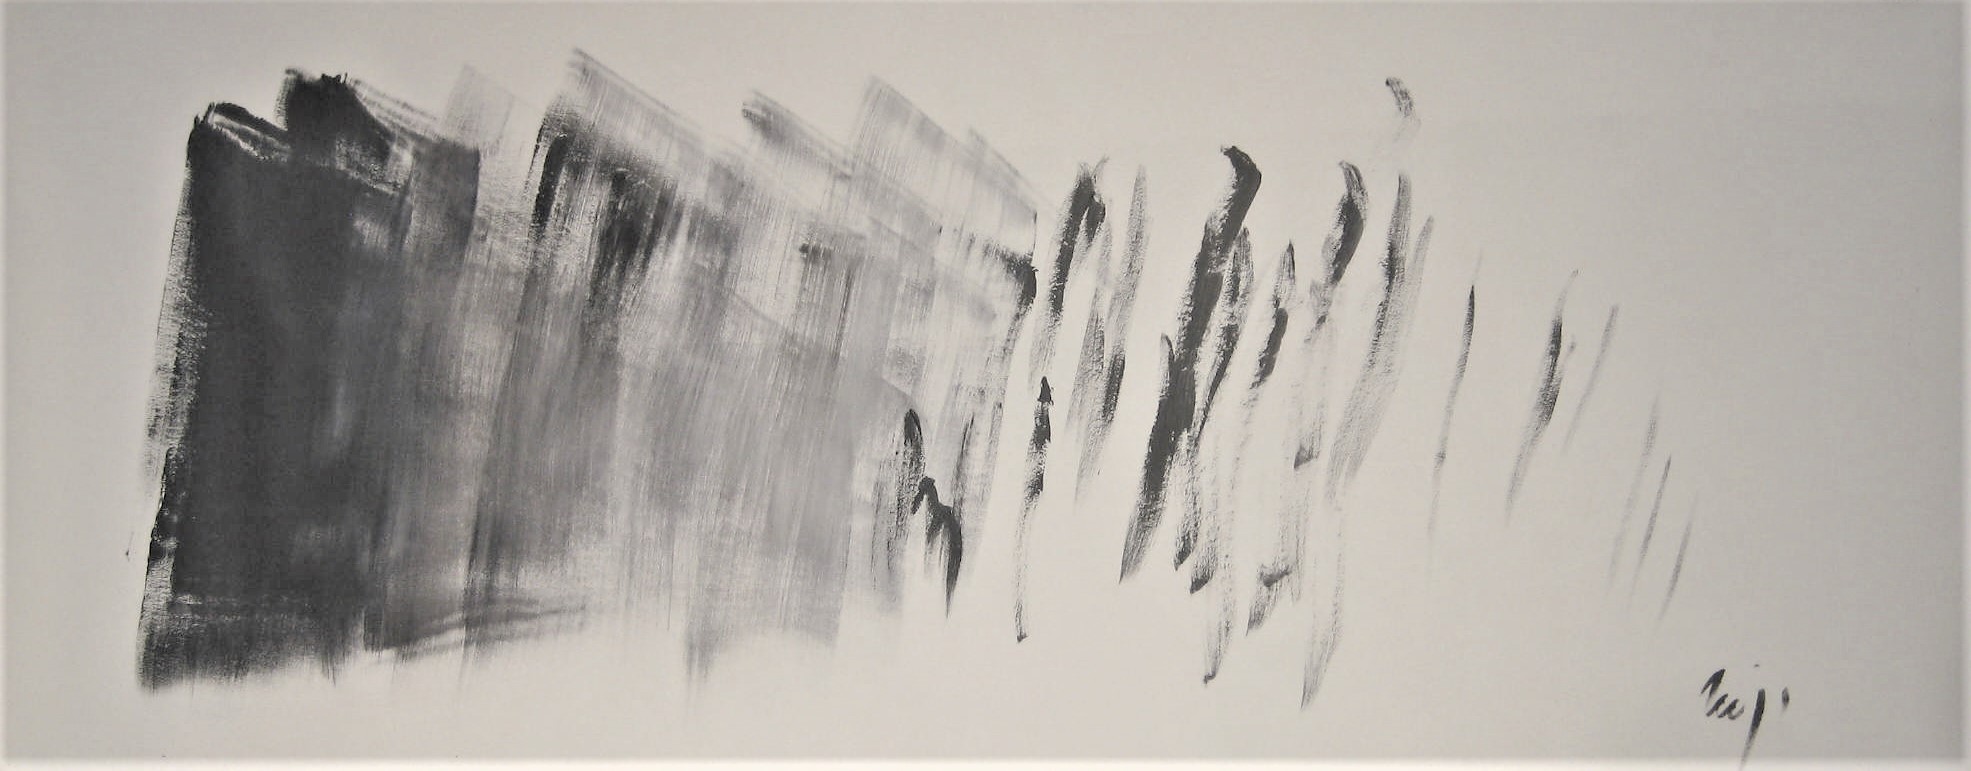 Exposition Délires et rythmes lents, Jacques Mandelbrojt, acrylique sur toile, 240x90 cm, 2015